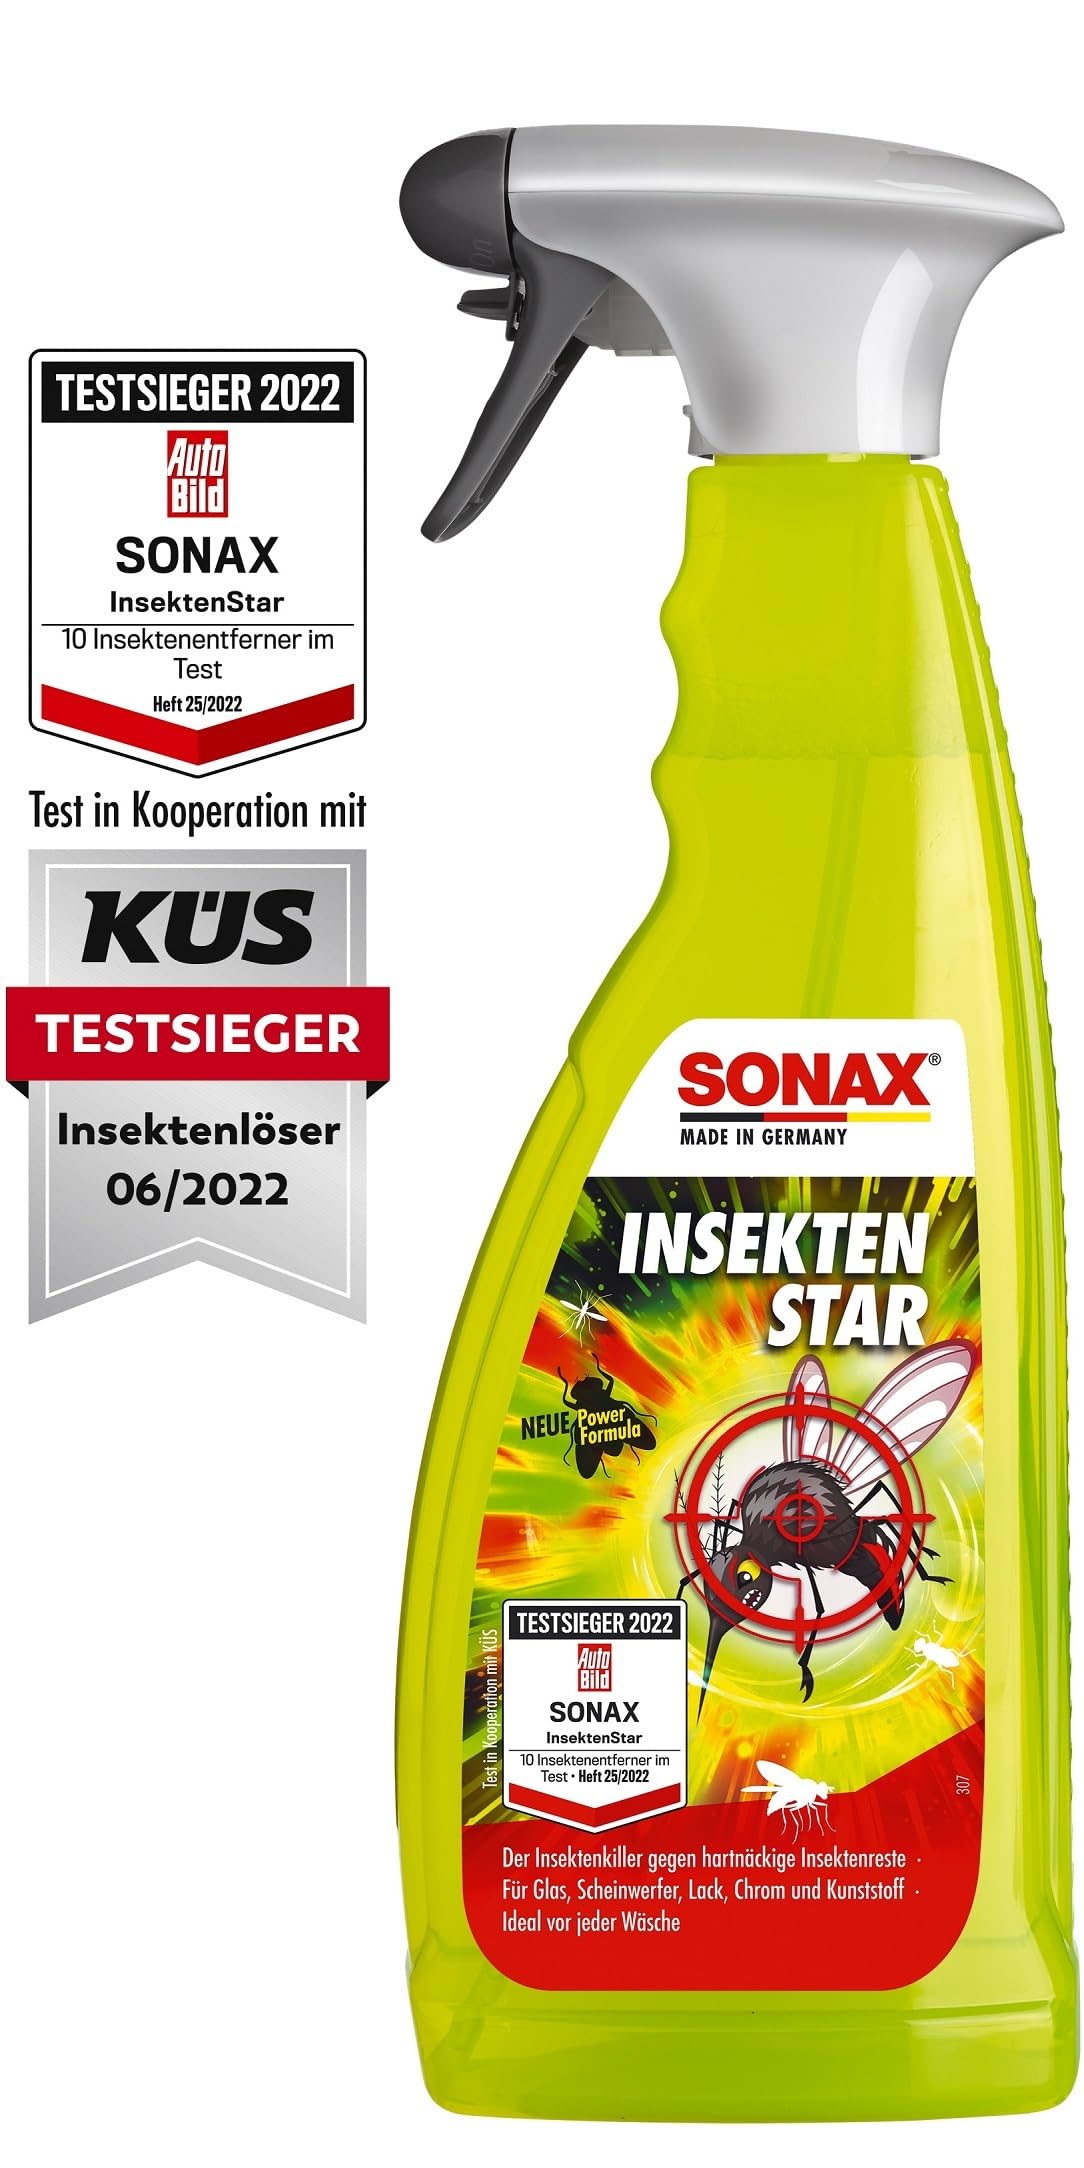 SONAX InsektenStar (750 ml) Insektenentferner löst schnell & schonend selbst hartnäckige & angetrocknete Insektenverschmutzungen, Art-Nr. 02334000 von SONAX